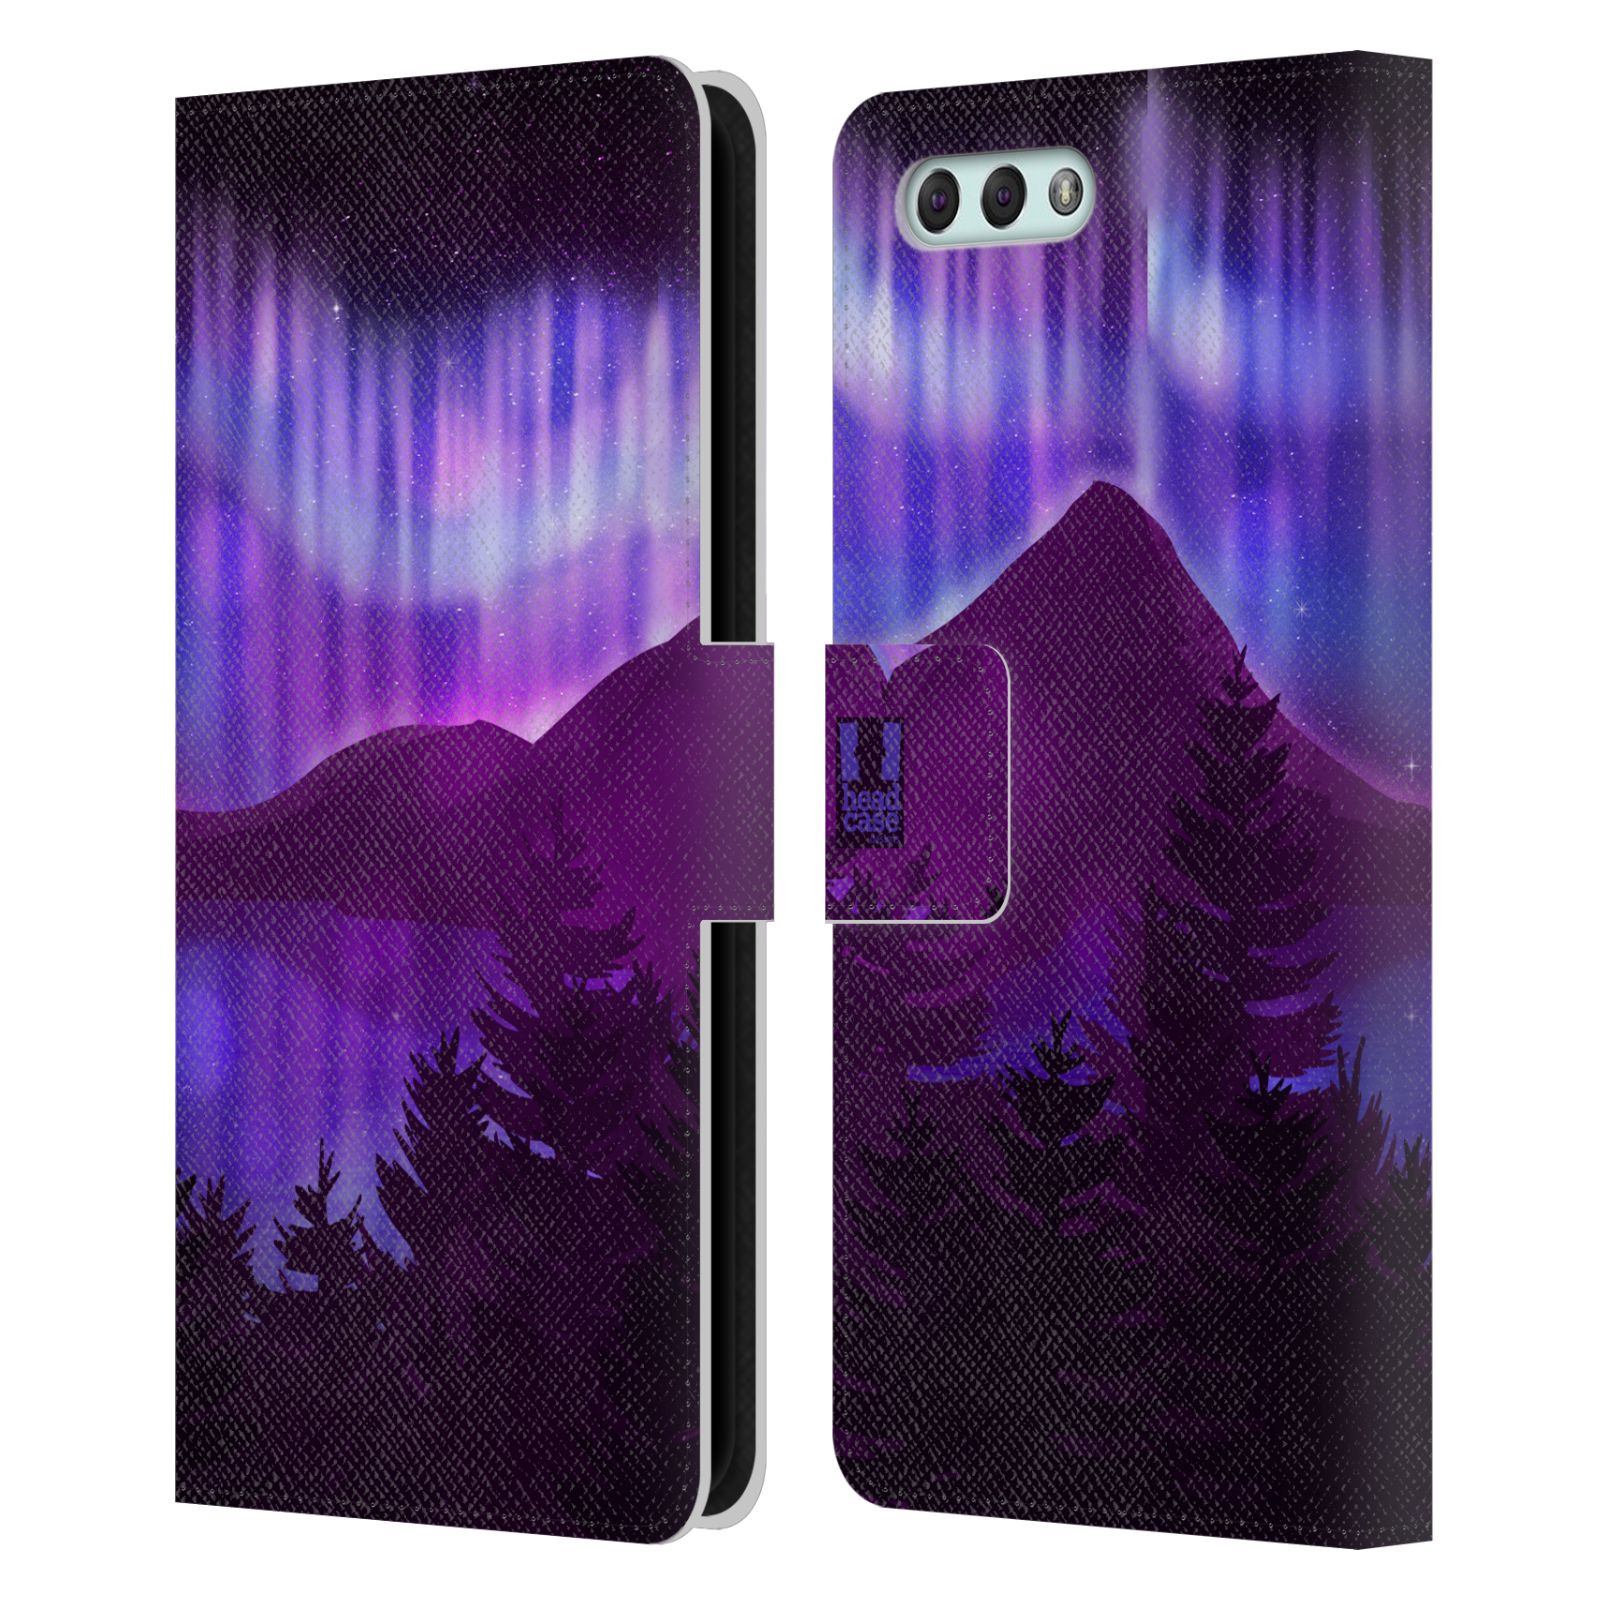 Pouzdro na mobil Asus Zenfone 4 ZE554KL  - HEAD CASE - Hory a lesy fialový odstín